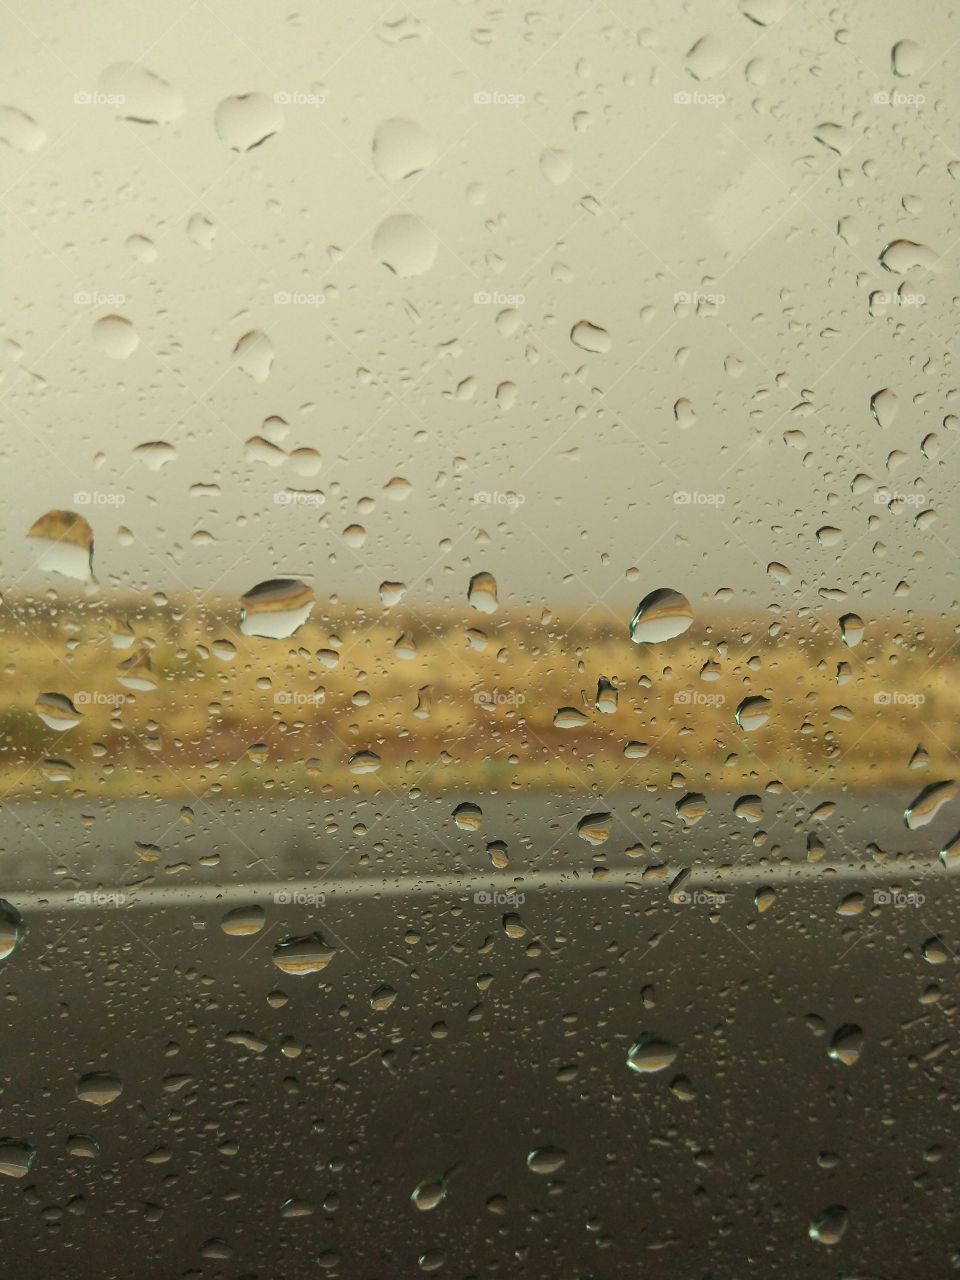 droplets on a window desert scene